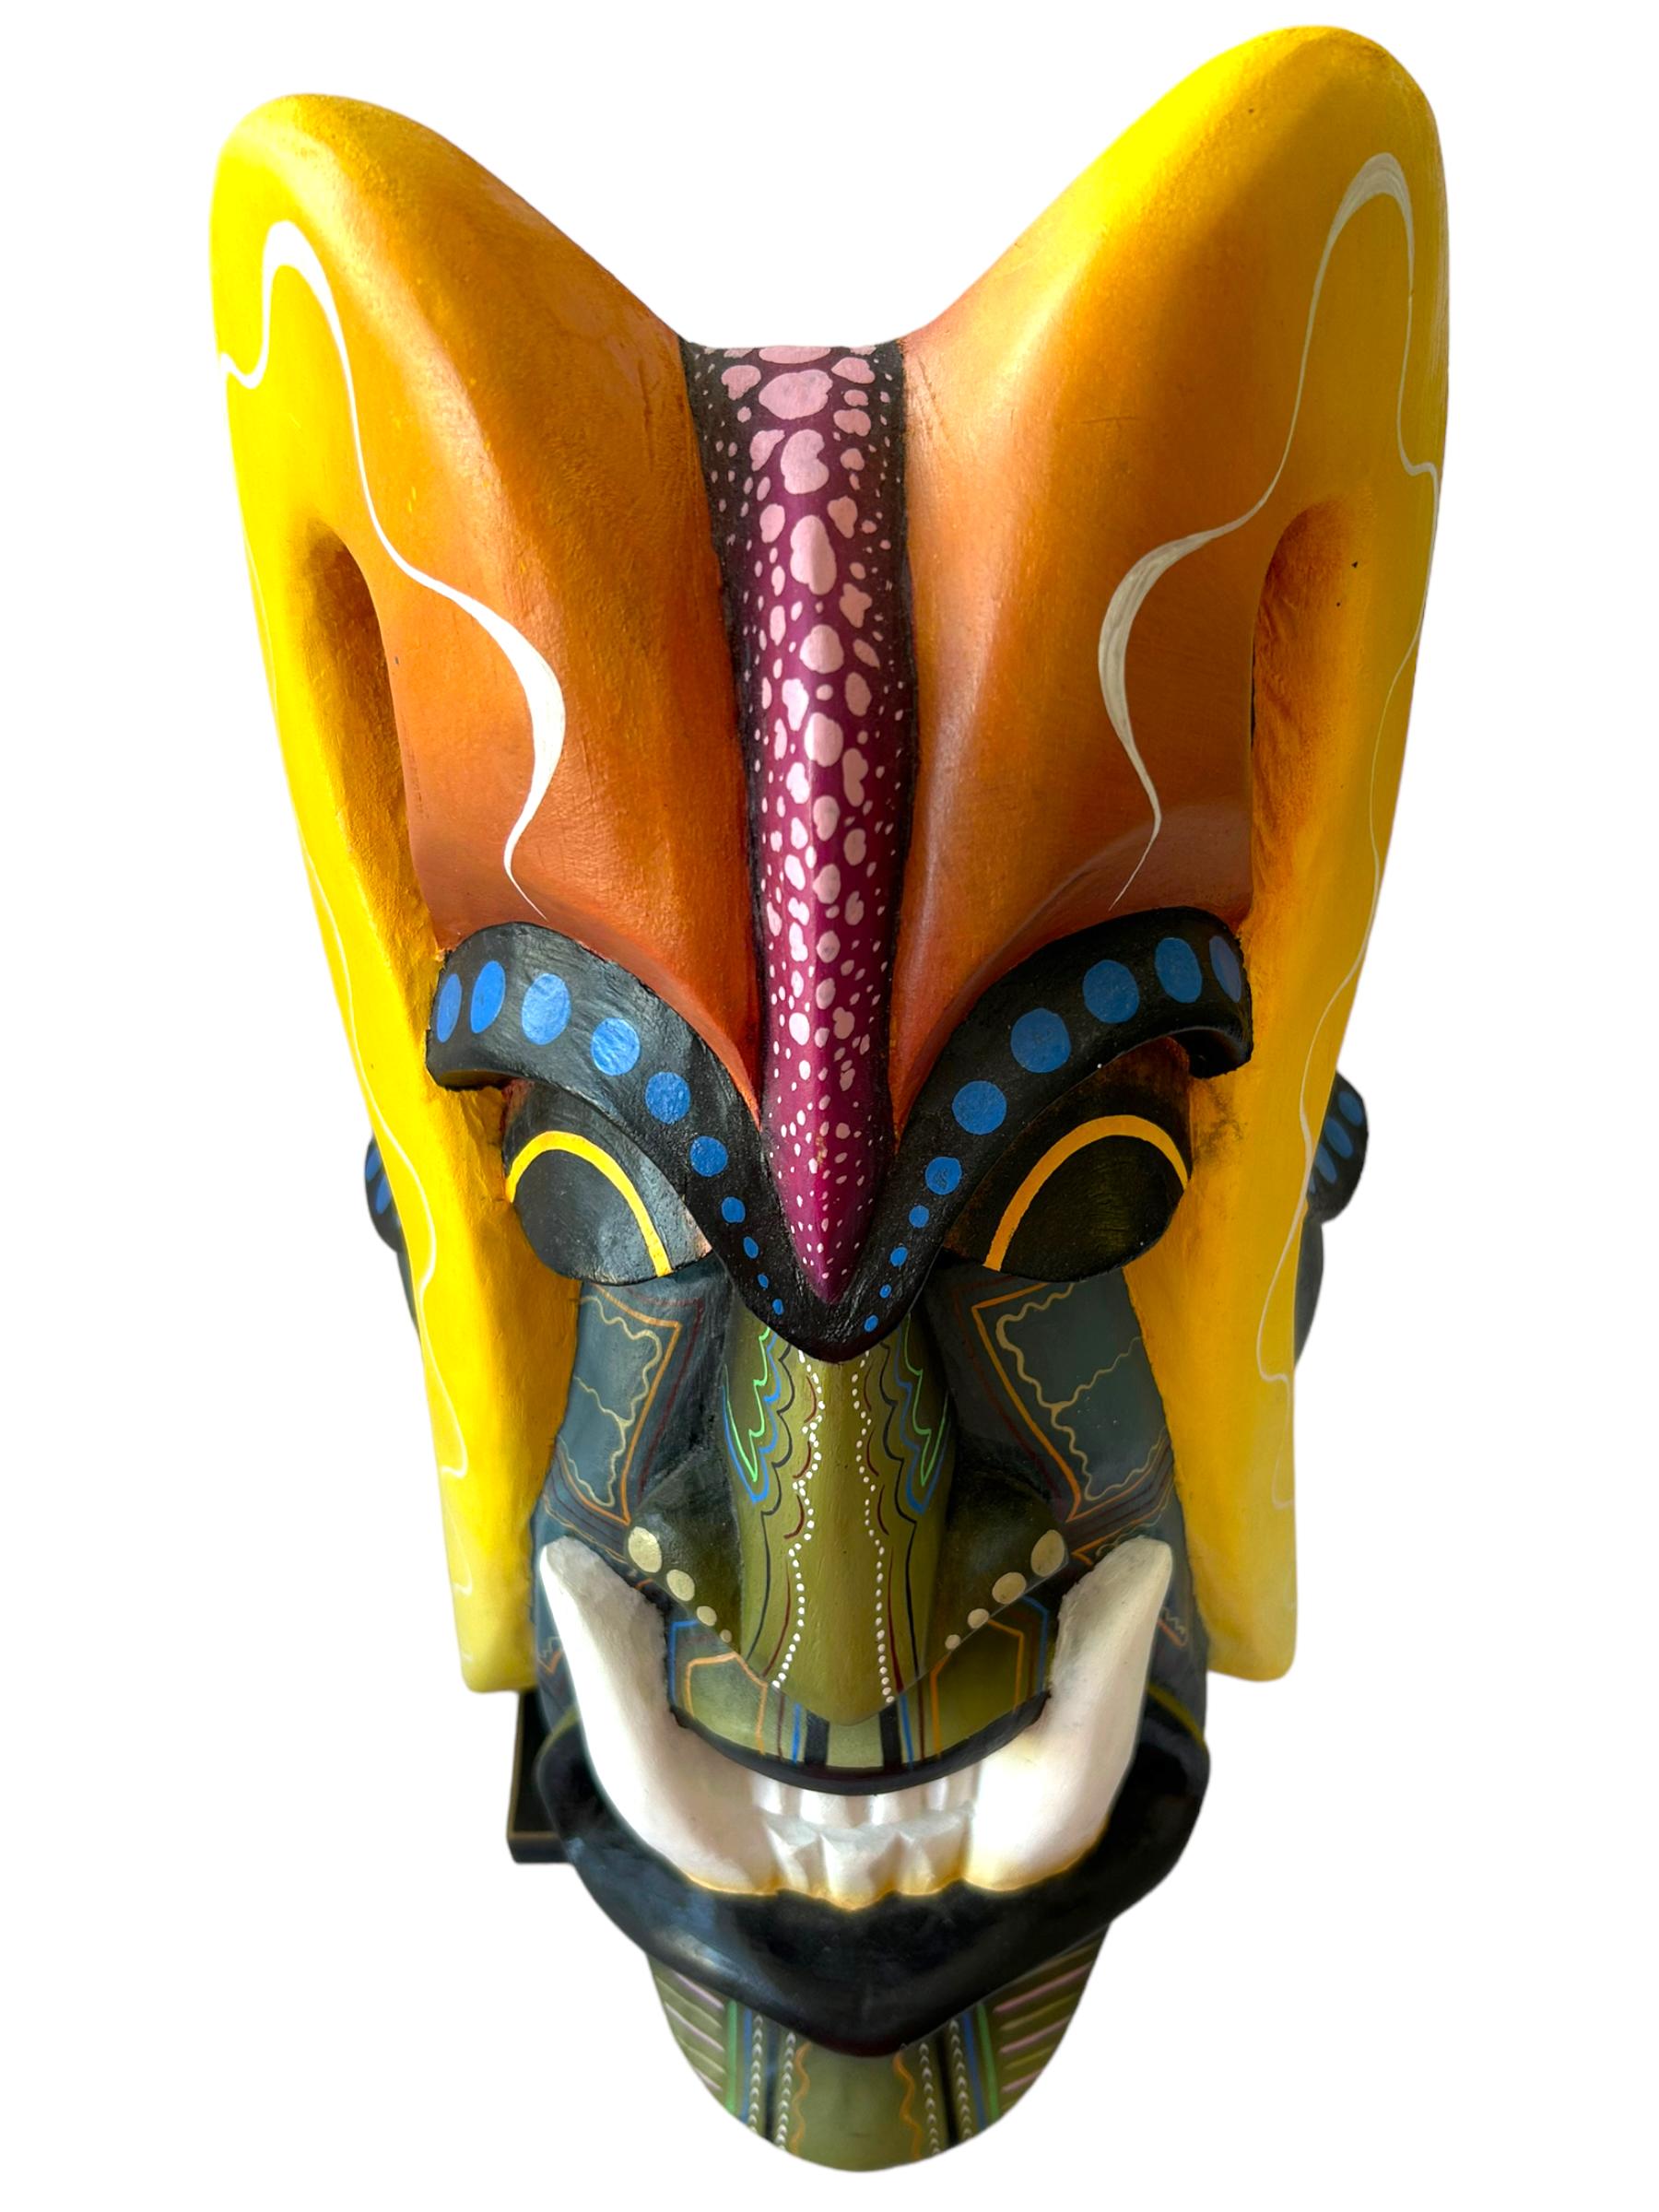 Diese Boruca-Maske im Vintage-Stil aus dem Jahr 2011 ist ein wahrhaft einzigartiges Kunstwerk. Handgefertigt von einheimischen Kunsthandwerkern aus Costa Rica ist diese Holzmaske eine wunderschöne Darstellung der lateinamerikanischen Kultur. Das